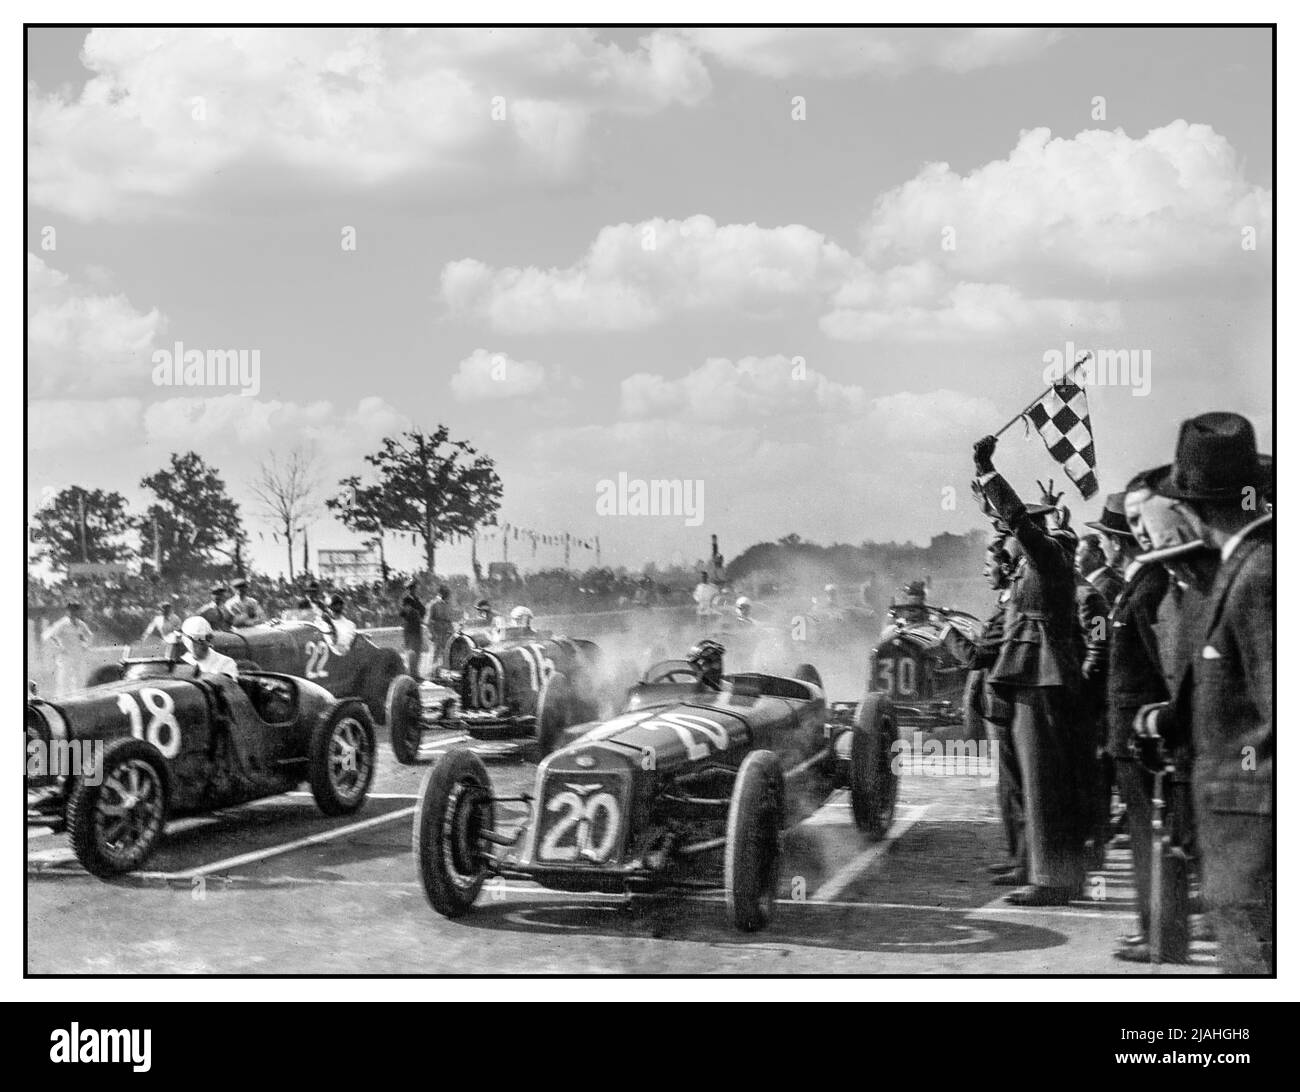 ITALIEN MONZA Grand Prix 1931 STARTAUFSTELLUNG STARTAUFSTELLUNG STARTAUFSTELLUNG des Großen Preises von Italien 1931 1931 der große Preis von Italien 1931 war ein Grand Prix-Motorrennen, das zwischen dem 24. Mai 1931 und dem 28. Mai 1931 in Monza stattfand. Das Rennen war das erste von drei Grands Prix, die Teil der ersten Europameisterschaft waren. Das Team von Giuseppe Campari und Tazio Nuvolari aus dem Alfa Romeo Works gewann das Rennen, vor ihren Teamkollegen Ferdinando Minoia und Baconin Borzacchini als Zweiter, während der dritte Platz an die Werksbüttel von Albert Divo und Guy Bouriat ging. Dies ist das längste Rennen der Geschichte, das 100 Stunden dauert. Stockfoto